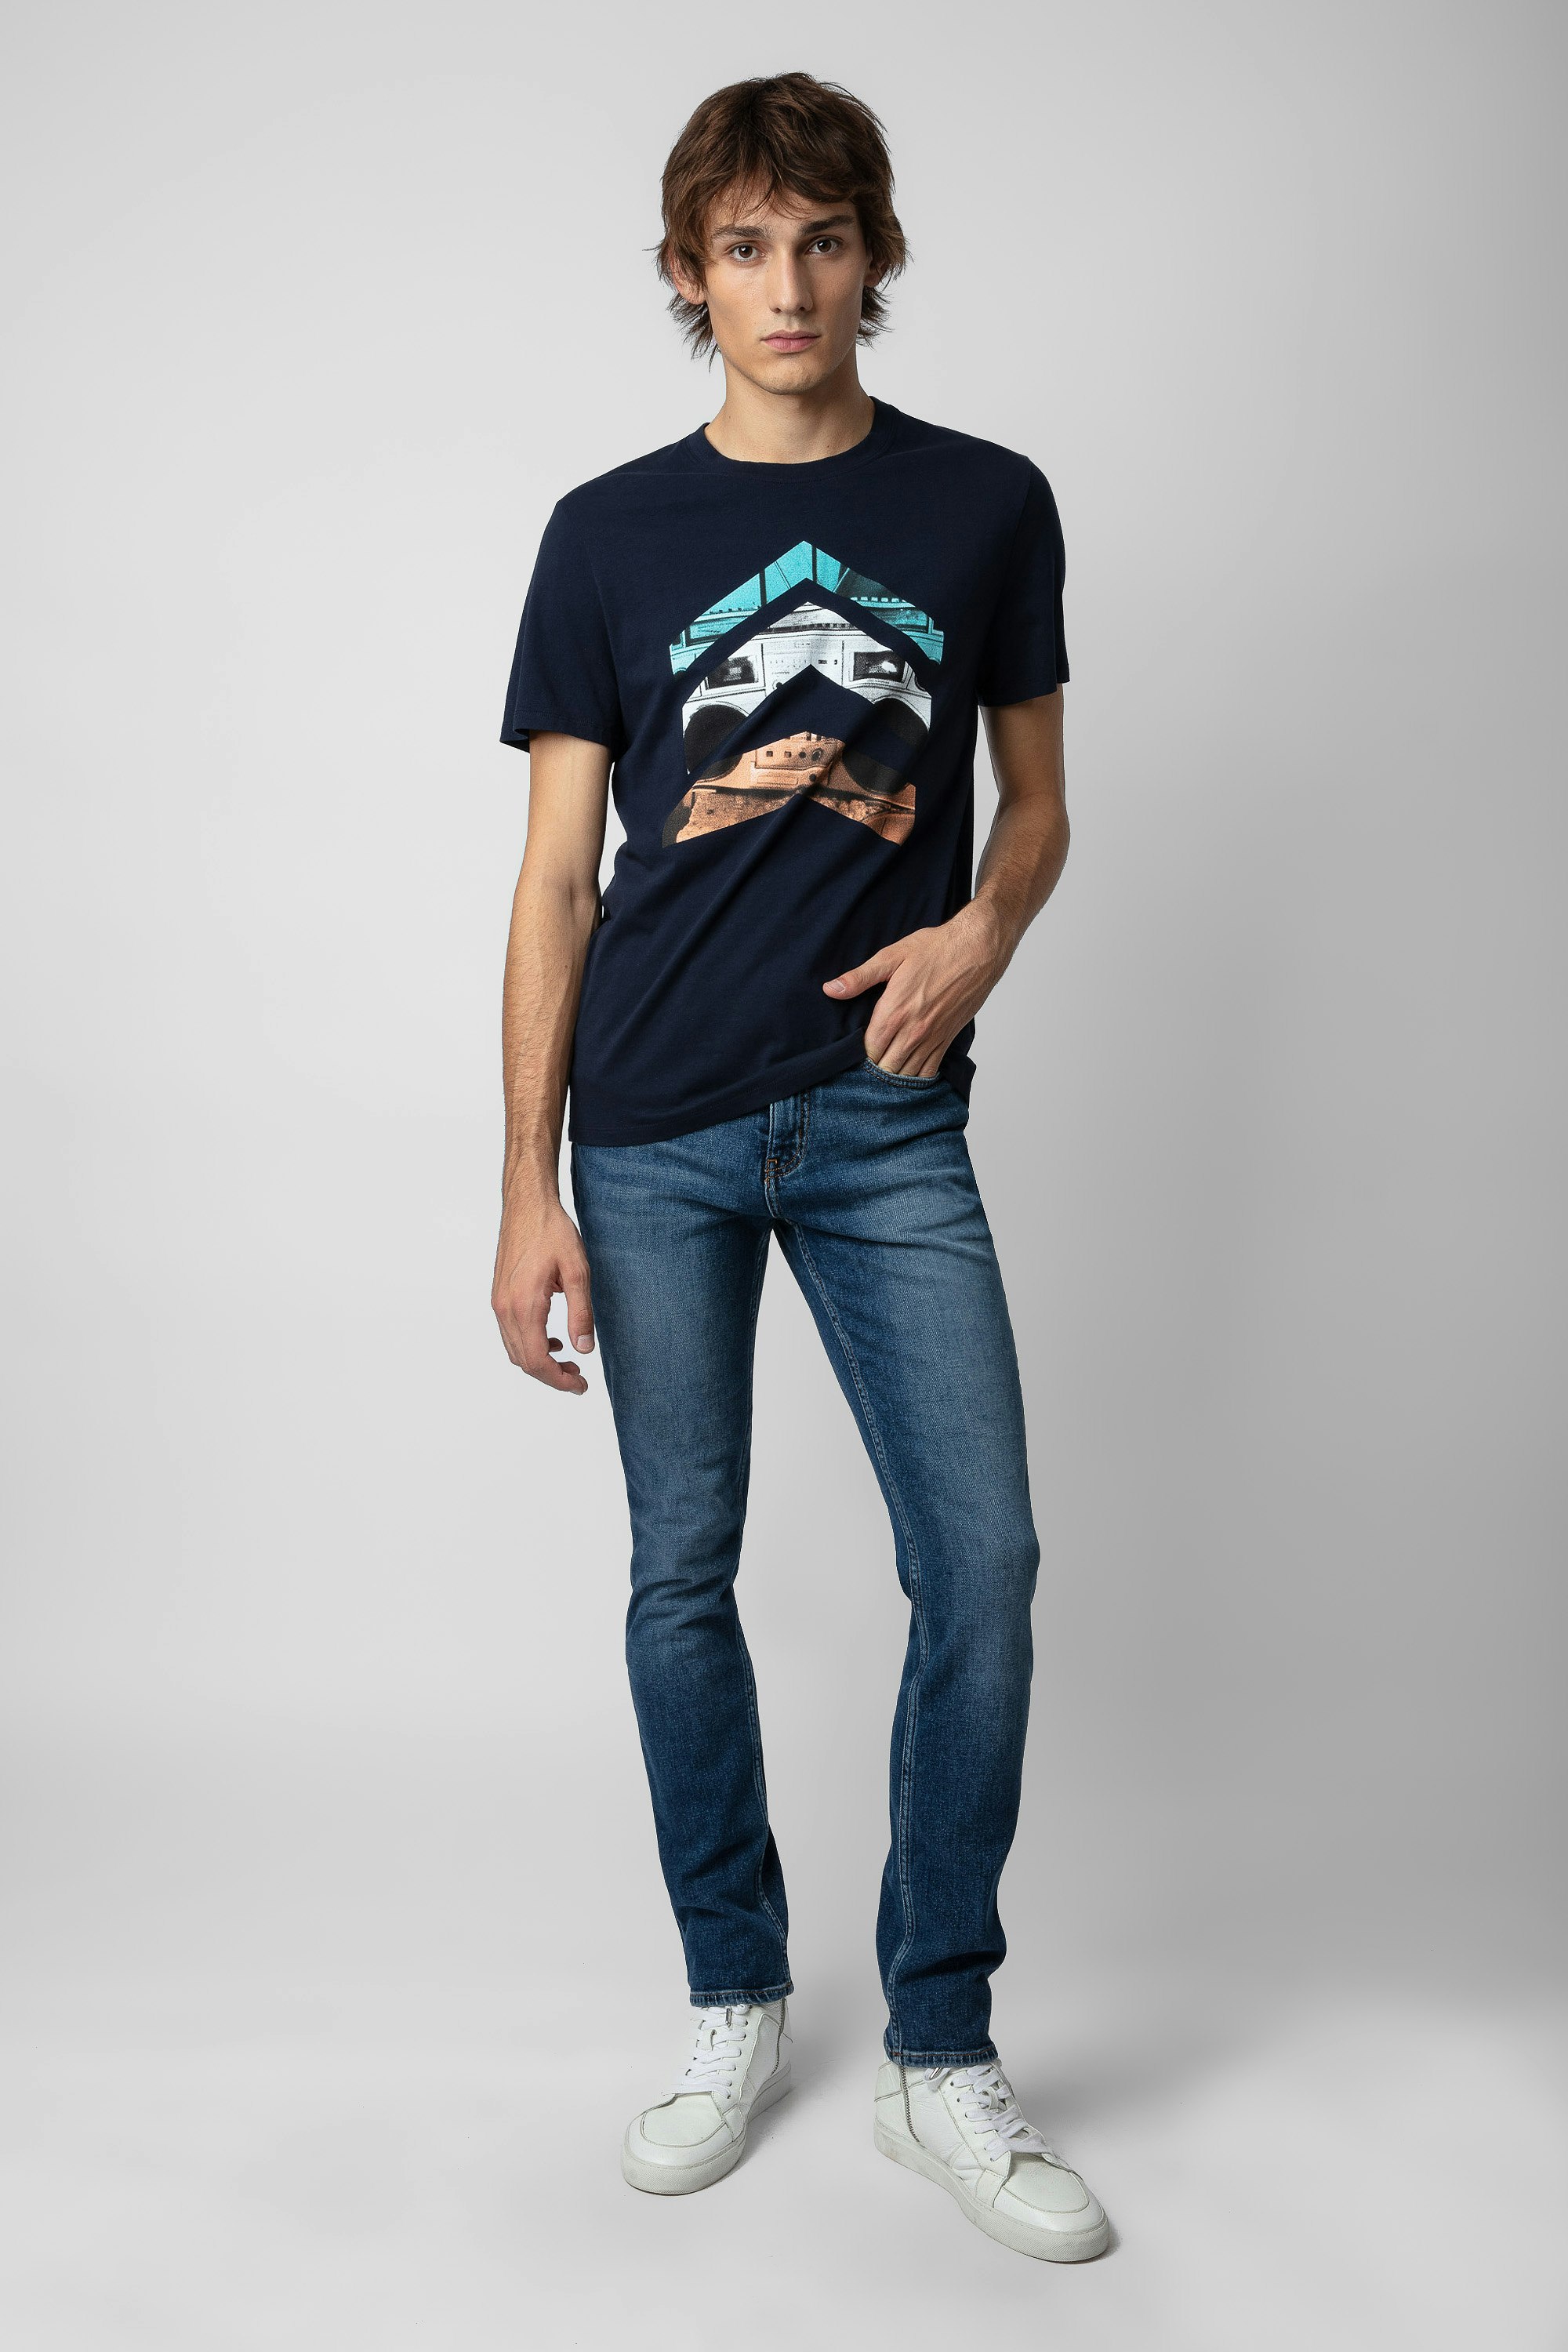 Camiseta Tommy - Camiseta en azul marino de algodón con estampado de flechas para hombre.